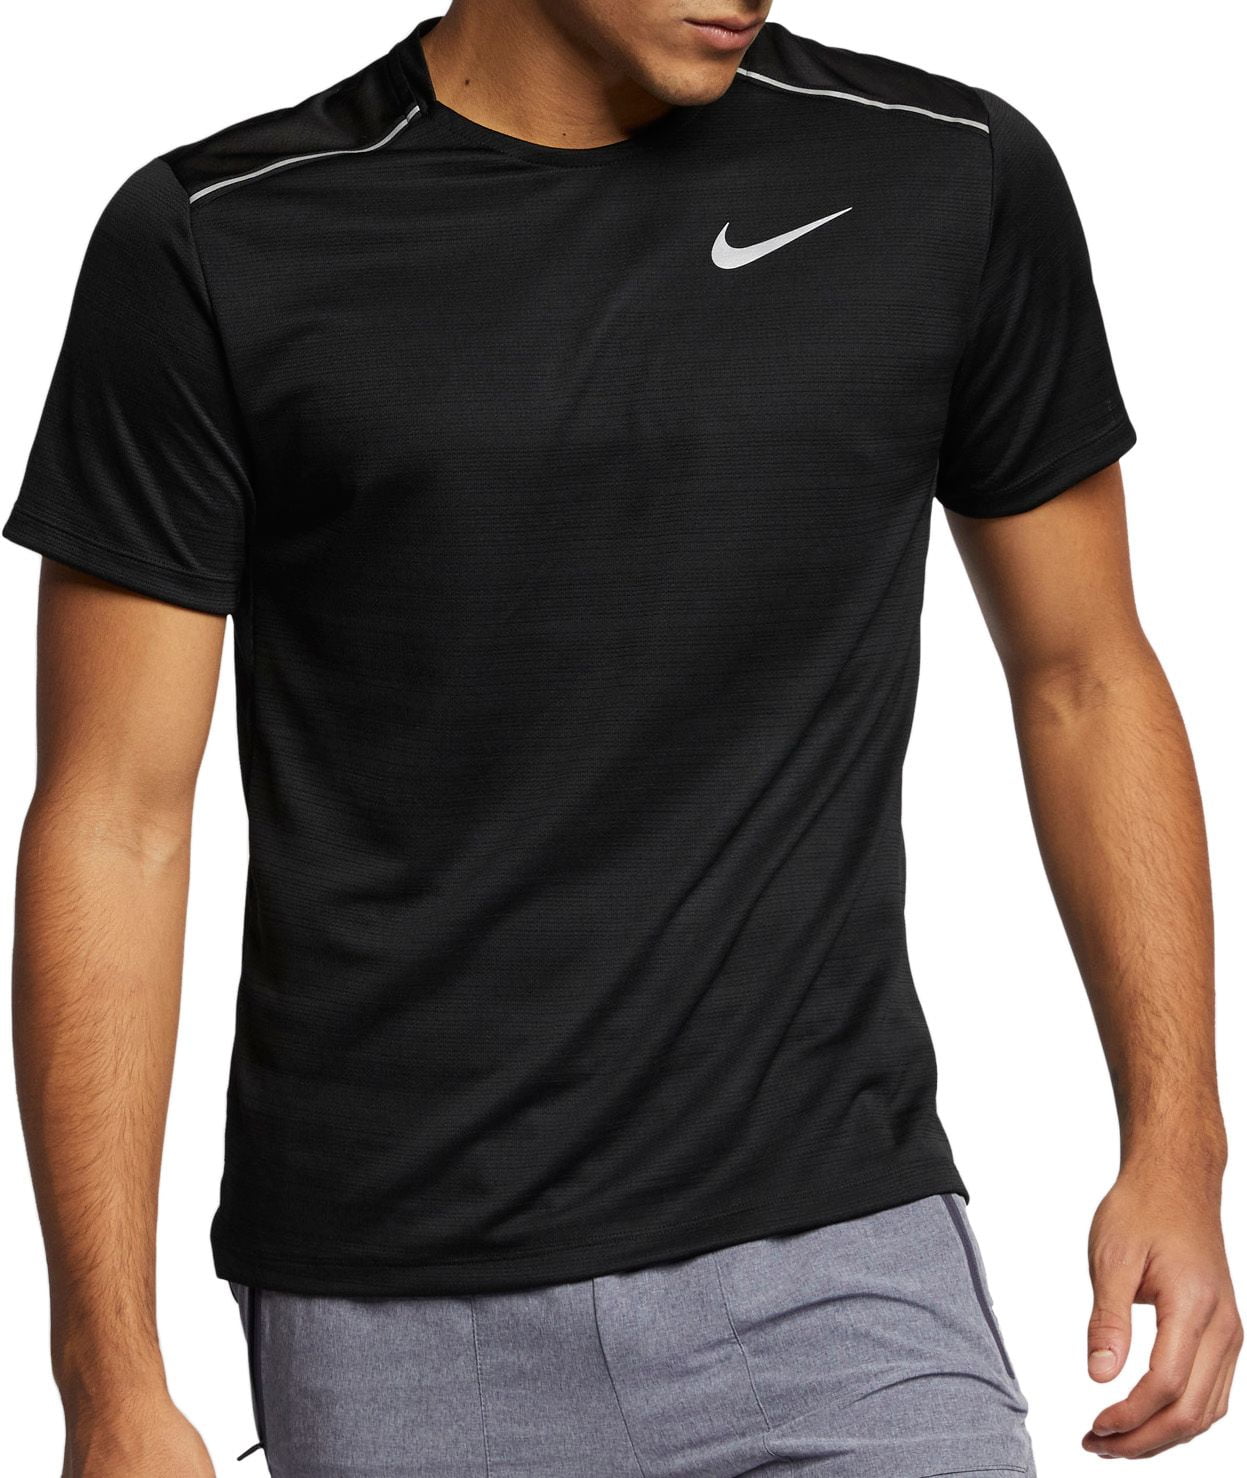 Nike Men's Dry Miler T-Shirt - Walmart.com